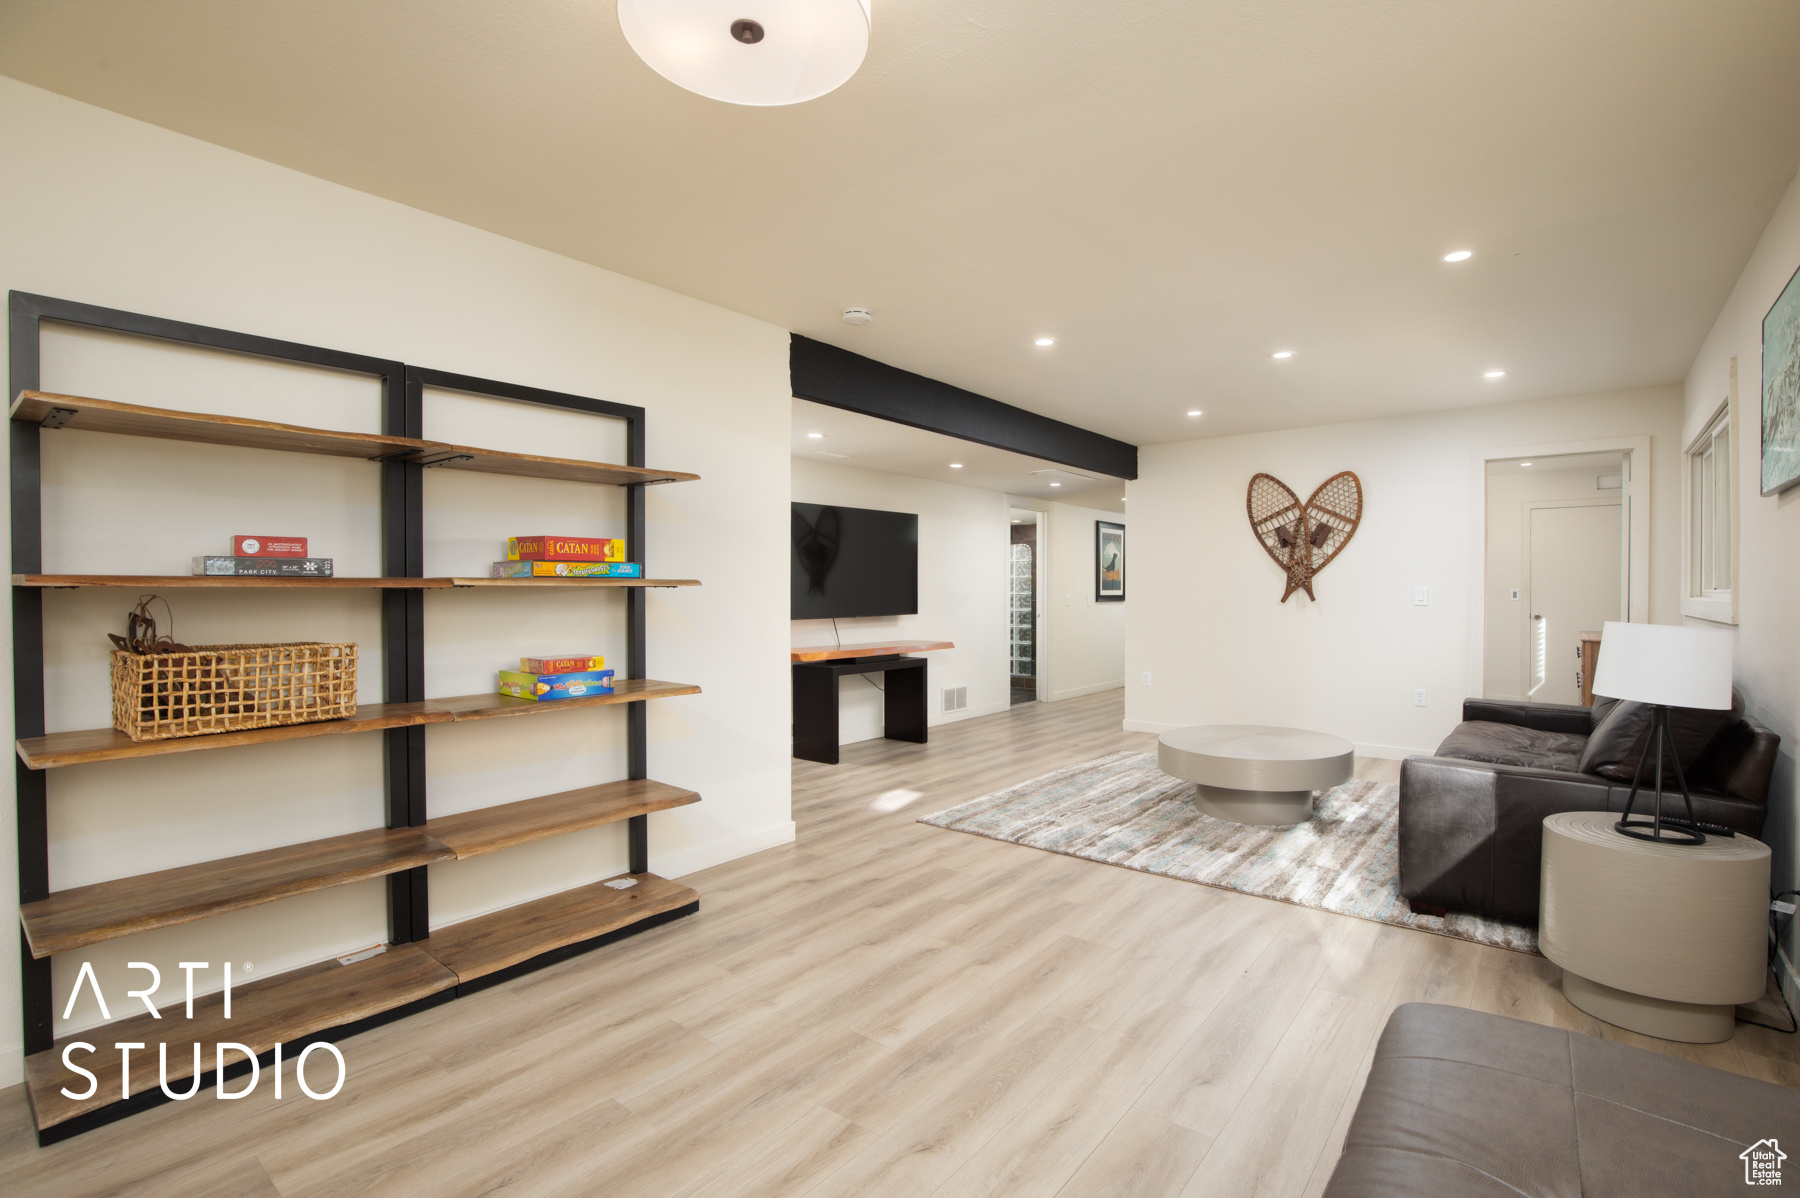 Living room featuring light hardwood / wood-style flooring